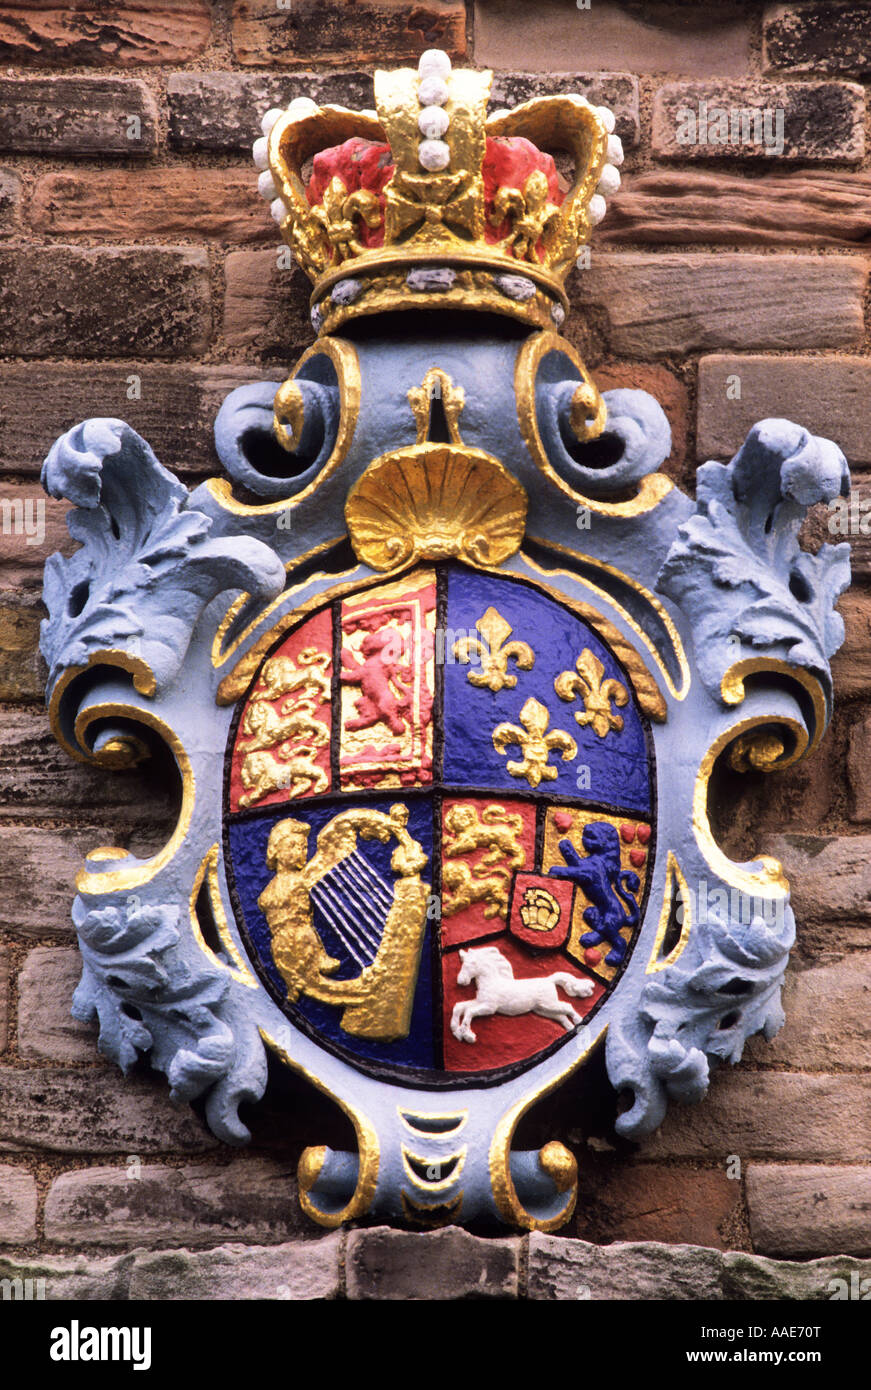 Berwick caserme, bracci di King George 1 Northumberland, Inghilterra, Regno Unito, Storia, Inglese di royalty, stemma reale, araldica Foto Stock